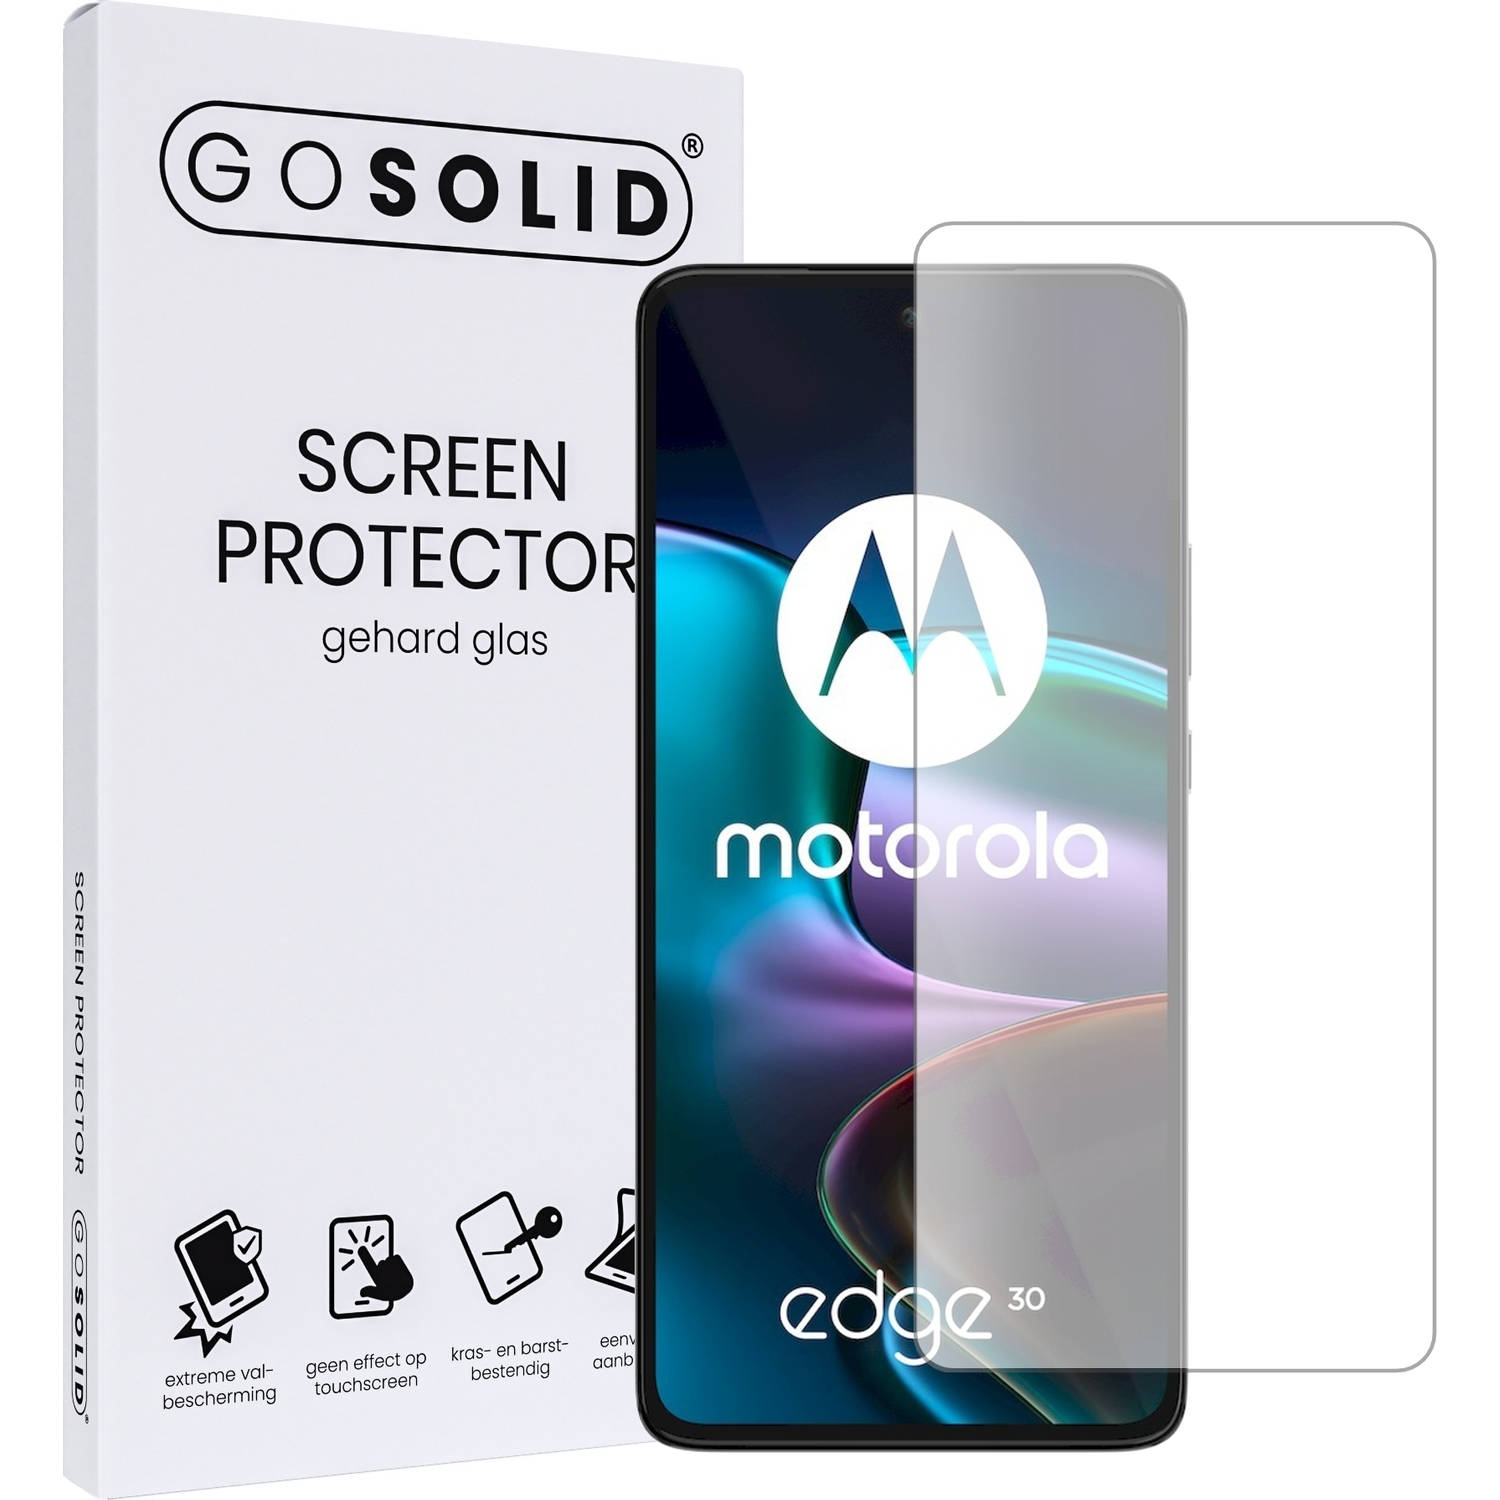 GO SOLID! Screenprotector voor Motorola Edge 30 NEO gehard glas